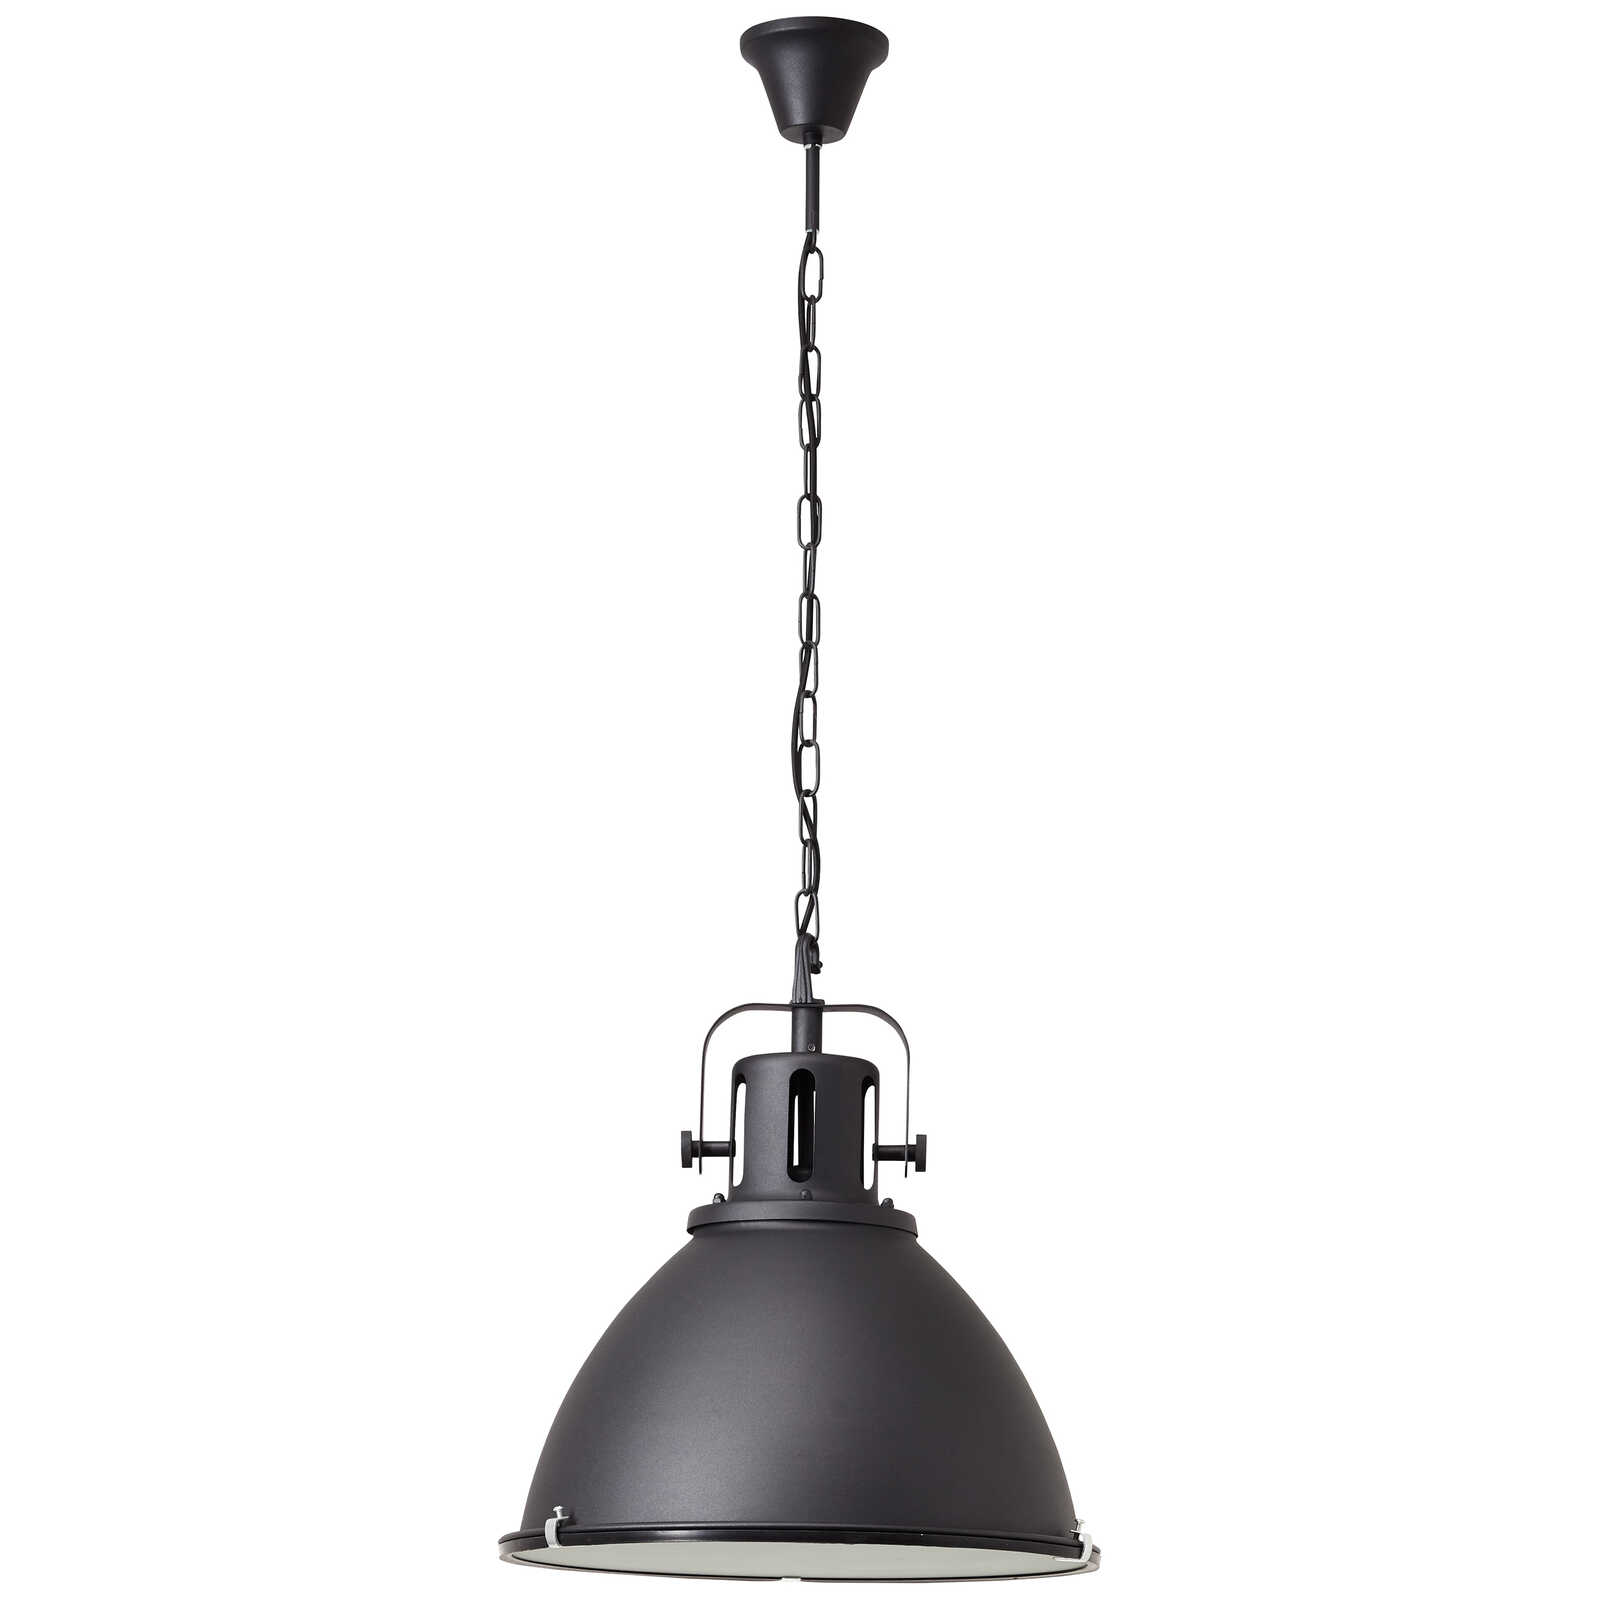             Metalen hanglamp - Josefine 6 - Zwart
        